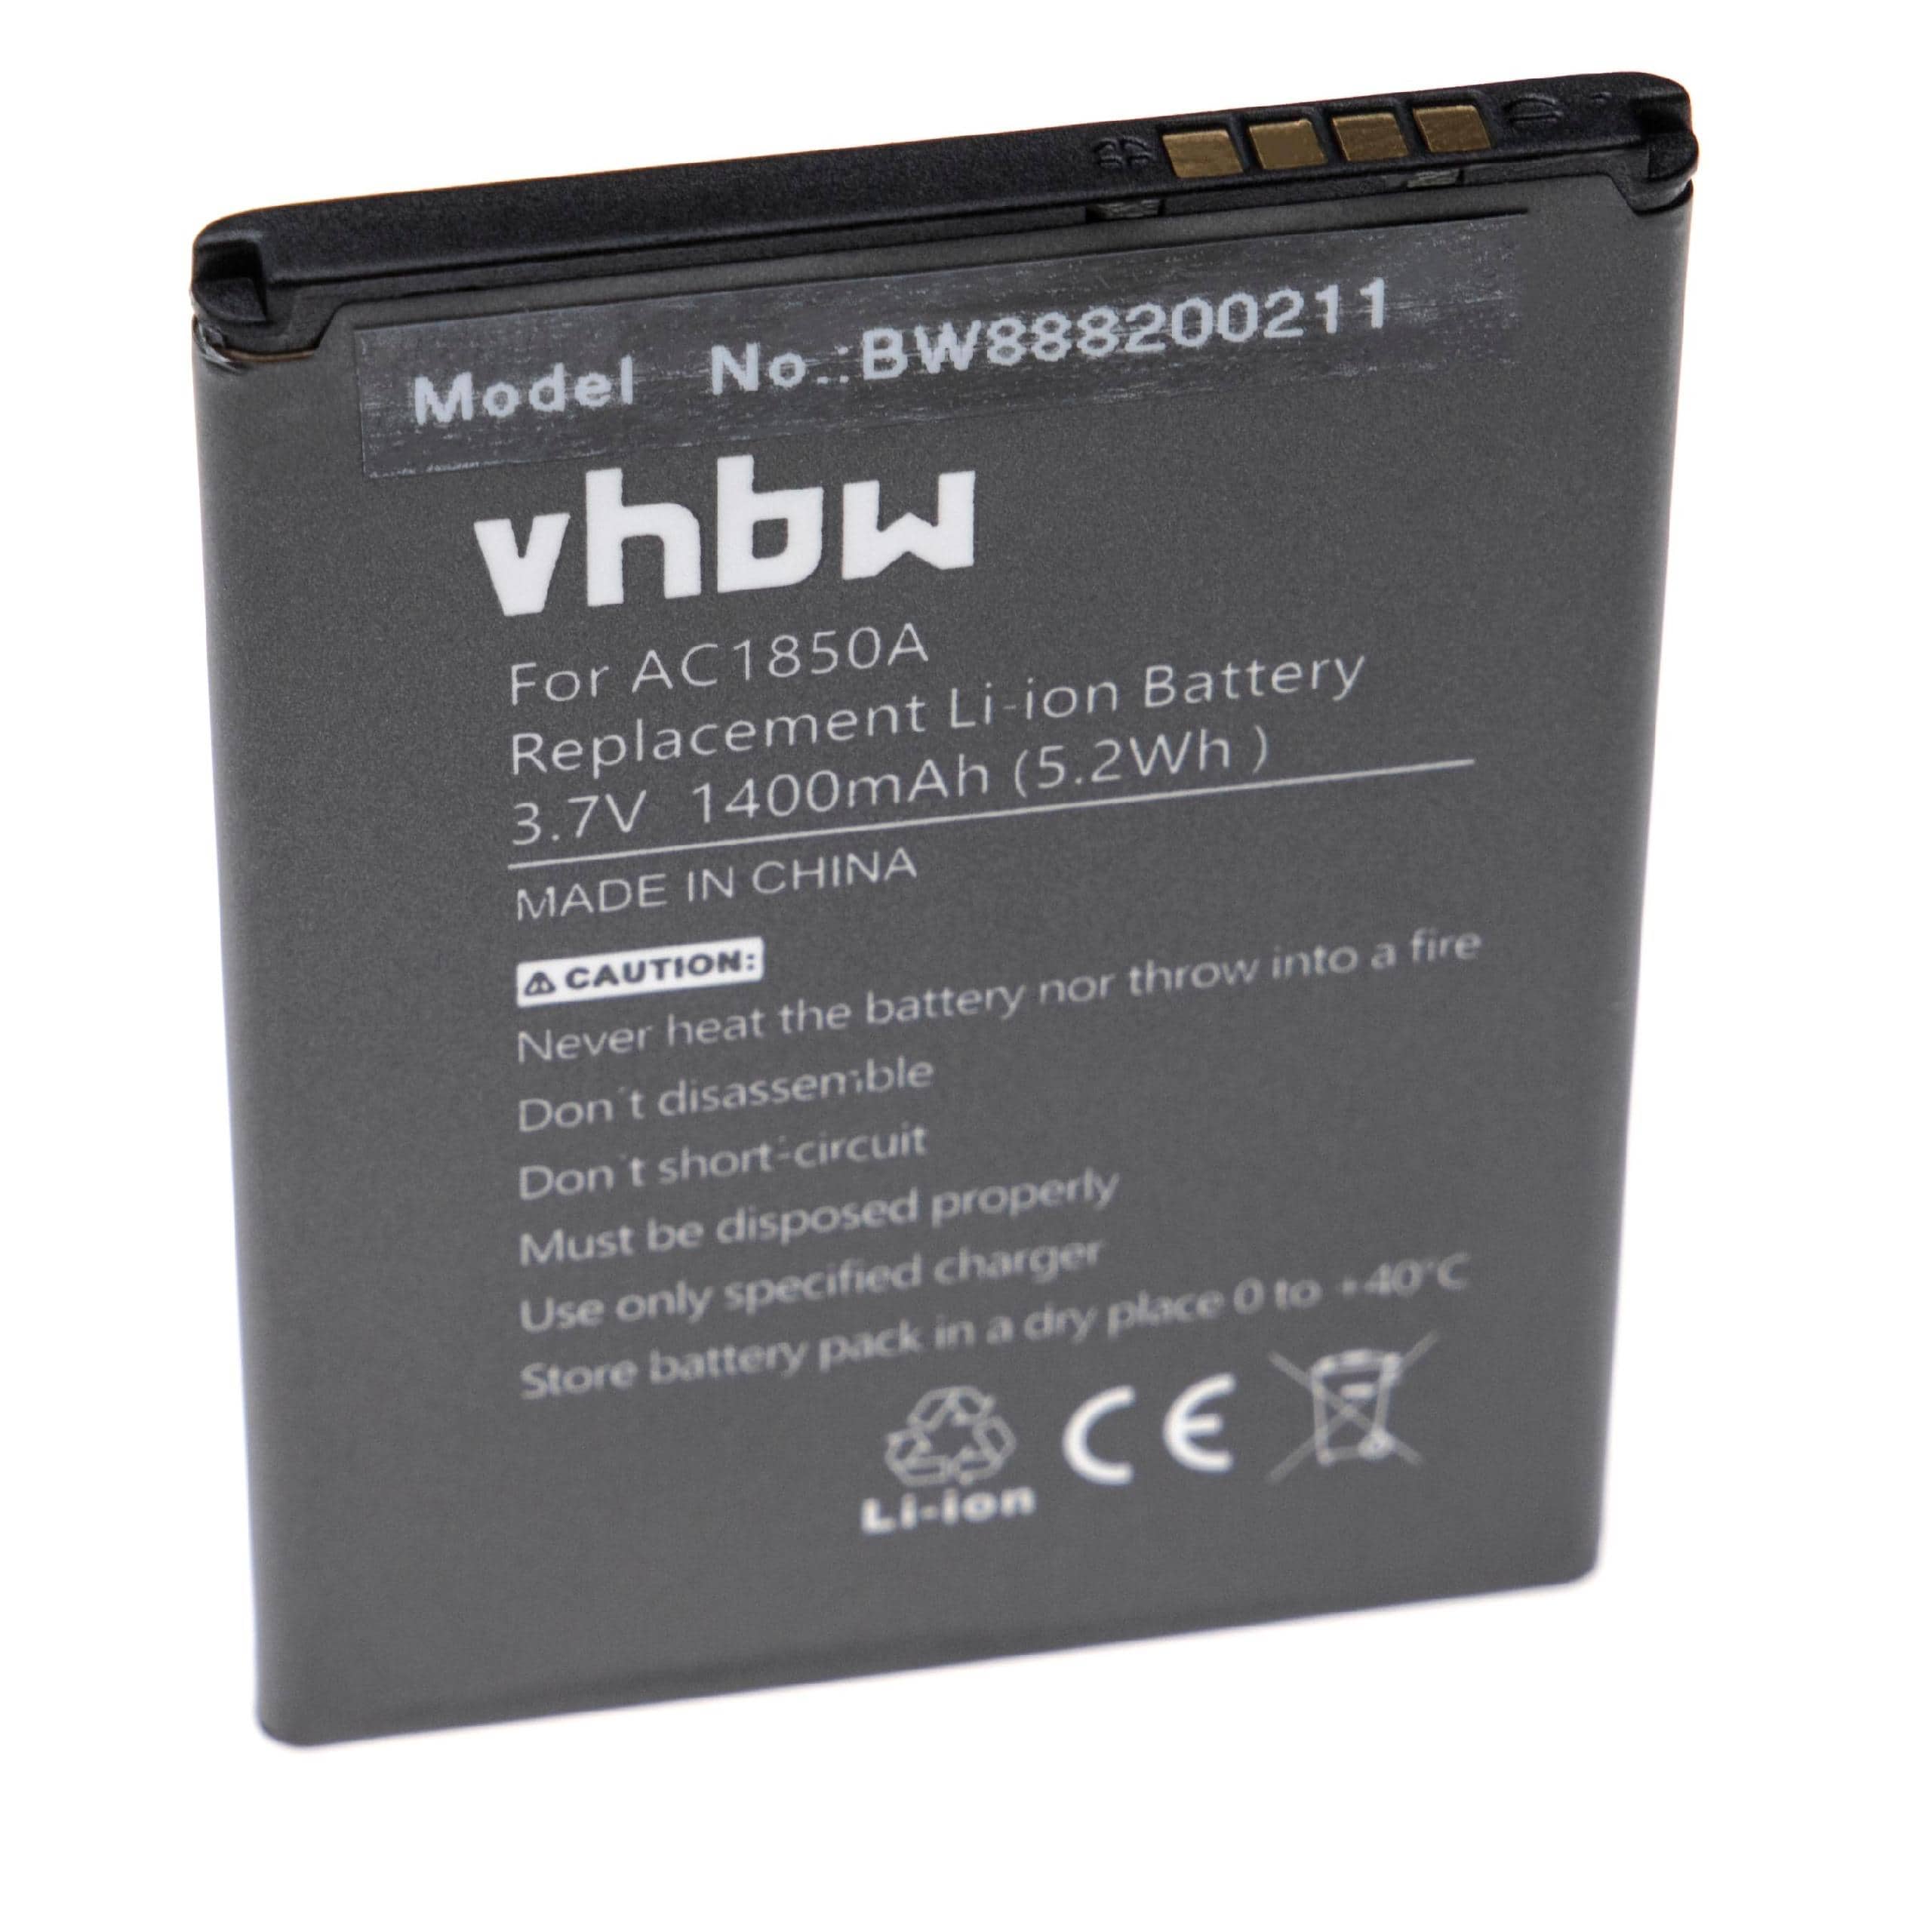 Batería reemplaza Archos AC1850A, TBW5986, AC300CA para móvil, teléfono Archos - 1400 mAh 3,7 V Li-Ion